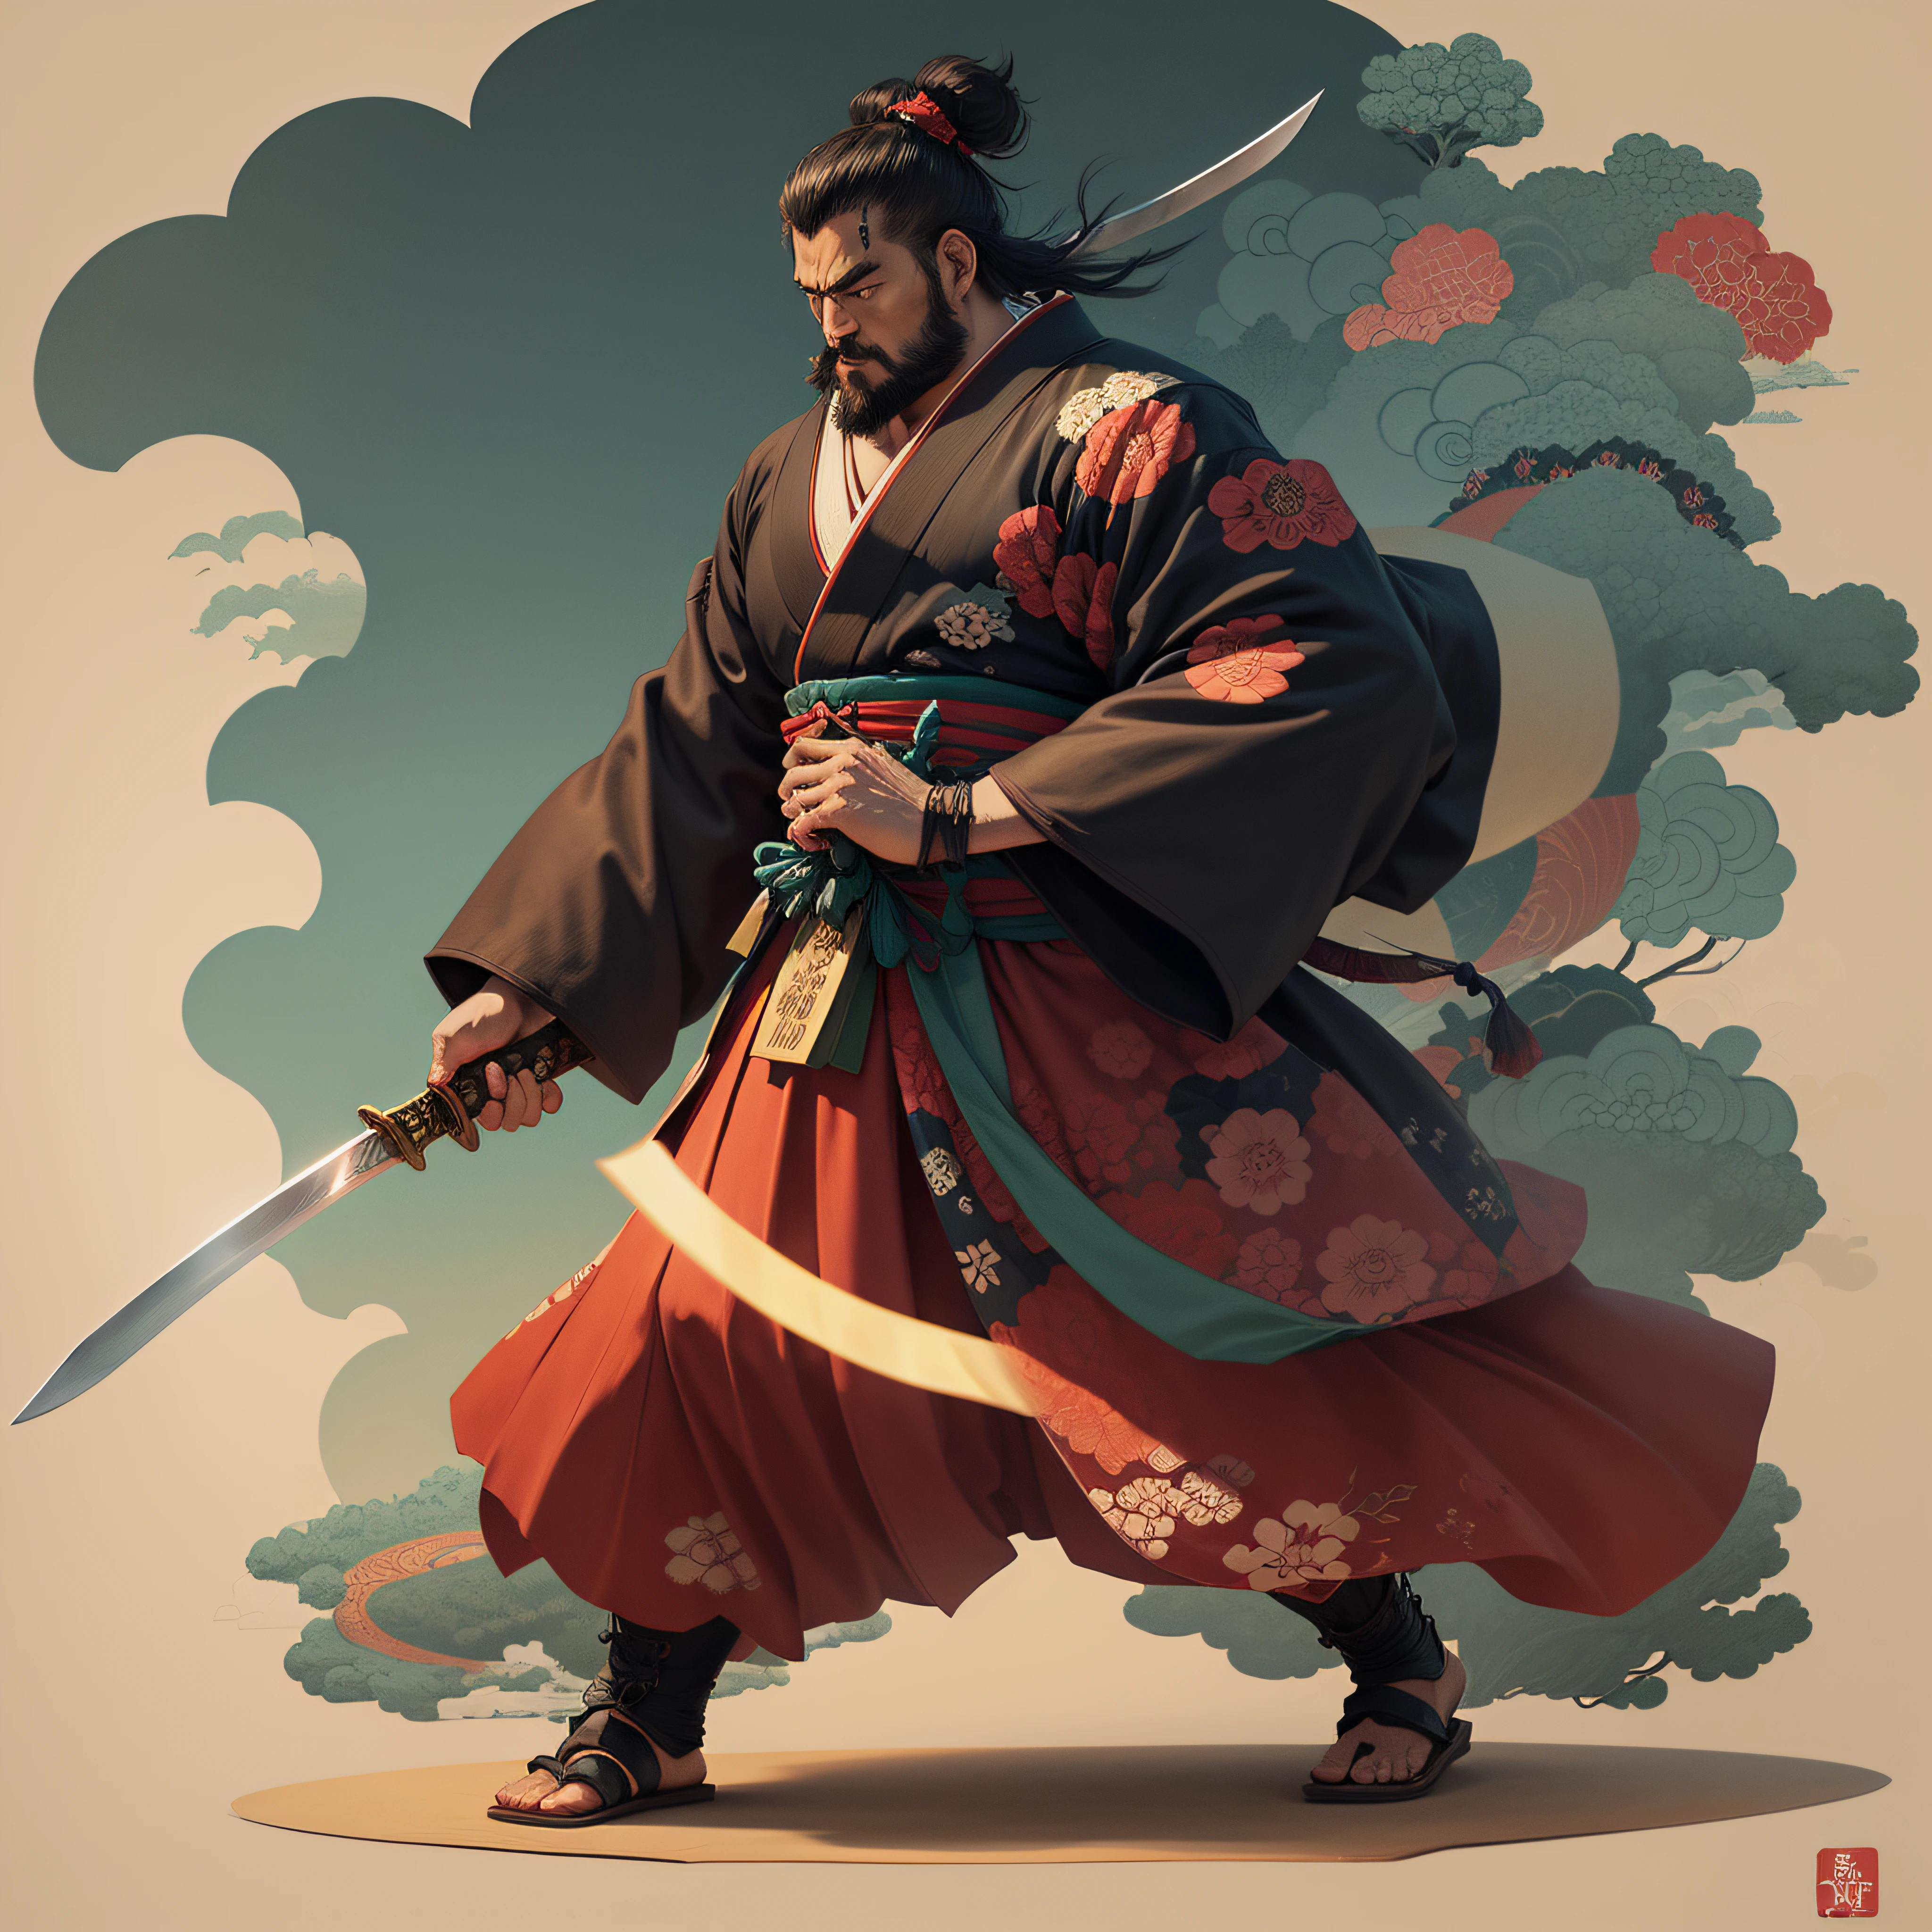 It is a full-Pintura corporal com cores naturais no estilo de ukiyo-e. Miyamoto Musashi is a Japan samurai with a large body like a strongman. He has a rough face, cabelo curto e preto, e um curta, barba aparada. He is a righteous samurai who fights evil. Ele usa um quimono preto. O hakama deve ser um pouco mais longo e desenhar em uma forma fluida que flutua no vento. He holds a sword in his right hand with flames coming out of his Japan sword. The background is a swirling flame in Katsushika Hokusai style. Obra-prima alta-resolution ukiyo-E Estilo, com a mais alta qualidade --auto --s2